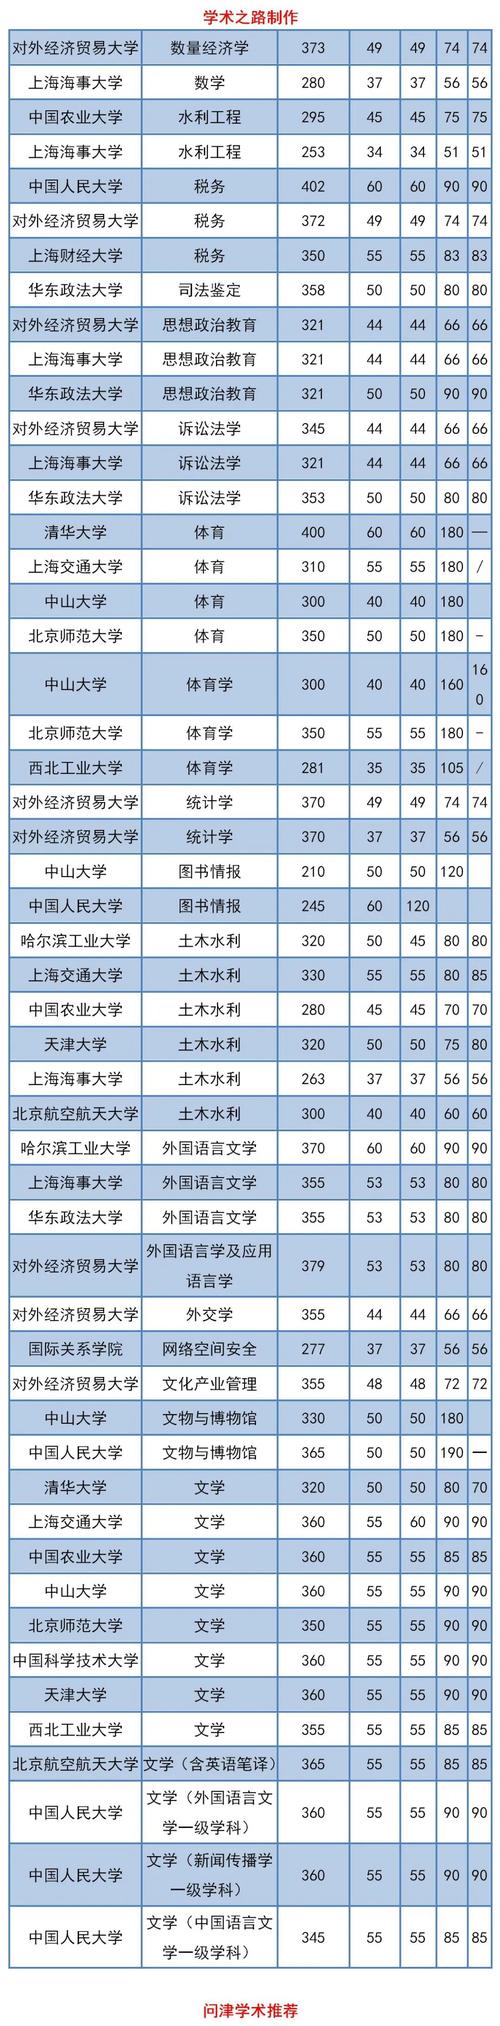 清华、上海交大、浙大等10所院校2021年考研复试分数线公布